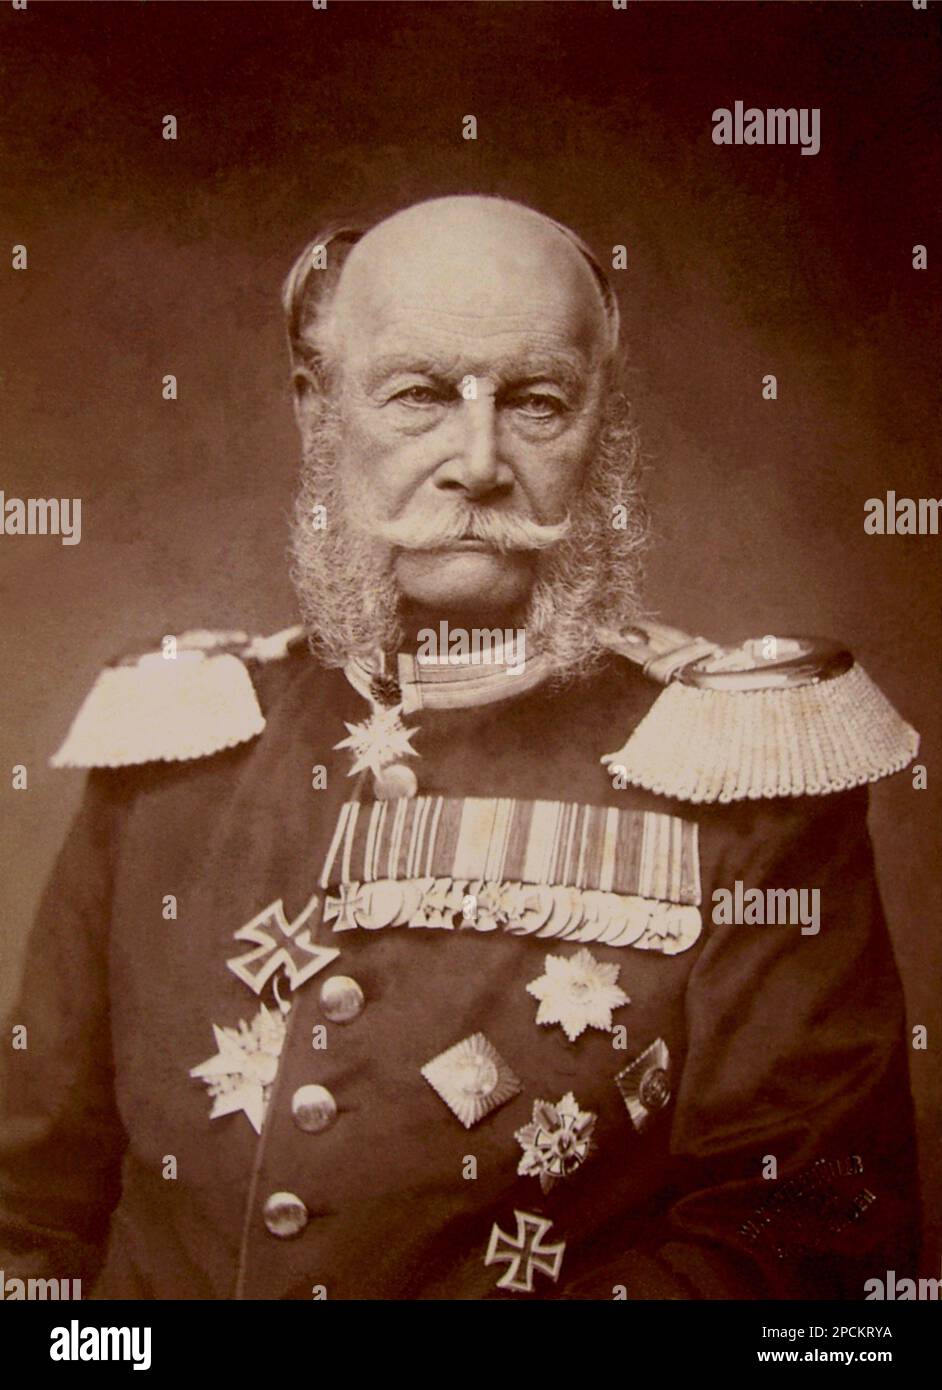 1884 , GERMANIA : il Kaiser GUGLIELMO i (Guglielmo i) HOHENZOLLERN , re di Prussen, imperatore di Germania (1797 - 1888) , conosciuto anche come Guglielmo il Grande . Foto di W.Kuntzemüller Baden-Baden . Del Casato di Hohenzollern vi erano il re di Prussia (1861 - 1888) e il primo imperatore tedesco (1871 - 1888). - REALI - ROYALTY - NOBILTÀ - Nobiltà - medaglie - medaglie - medaglia - divisa militare - divisa militare - timone - elmo - elmetto teutonico - e - baffi - baffi - William Frederick Louis --- Archivio GBB Foto Stock